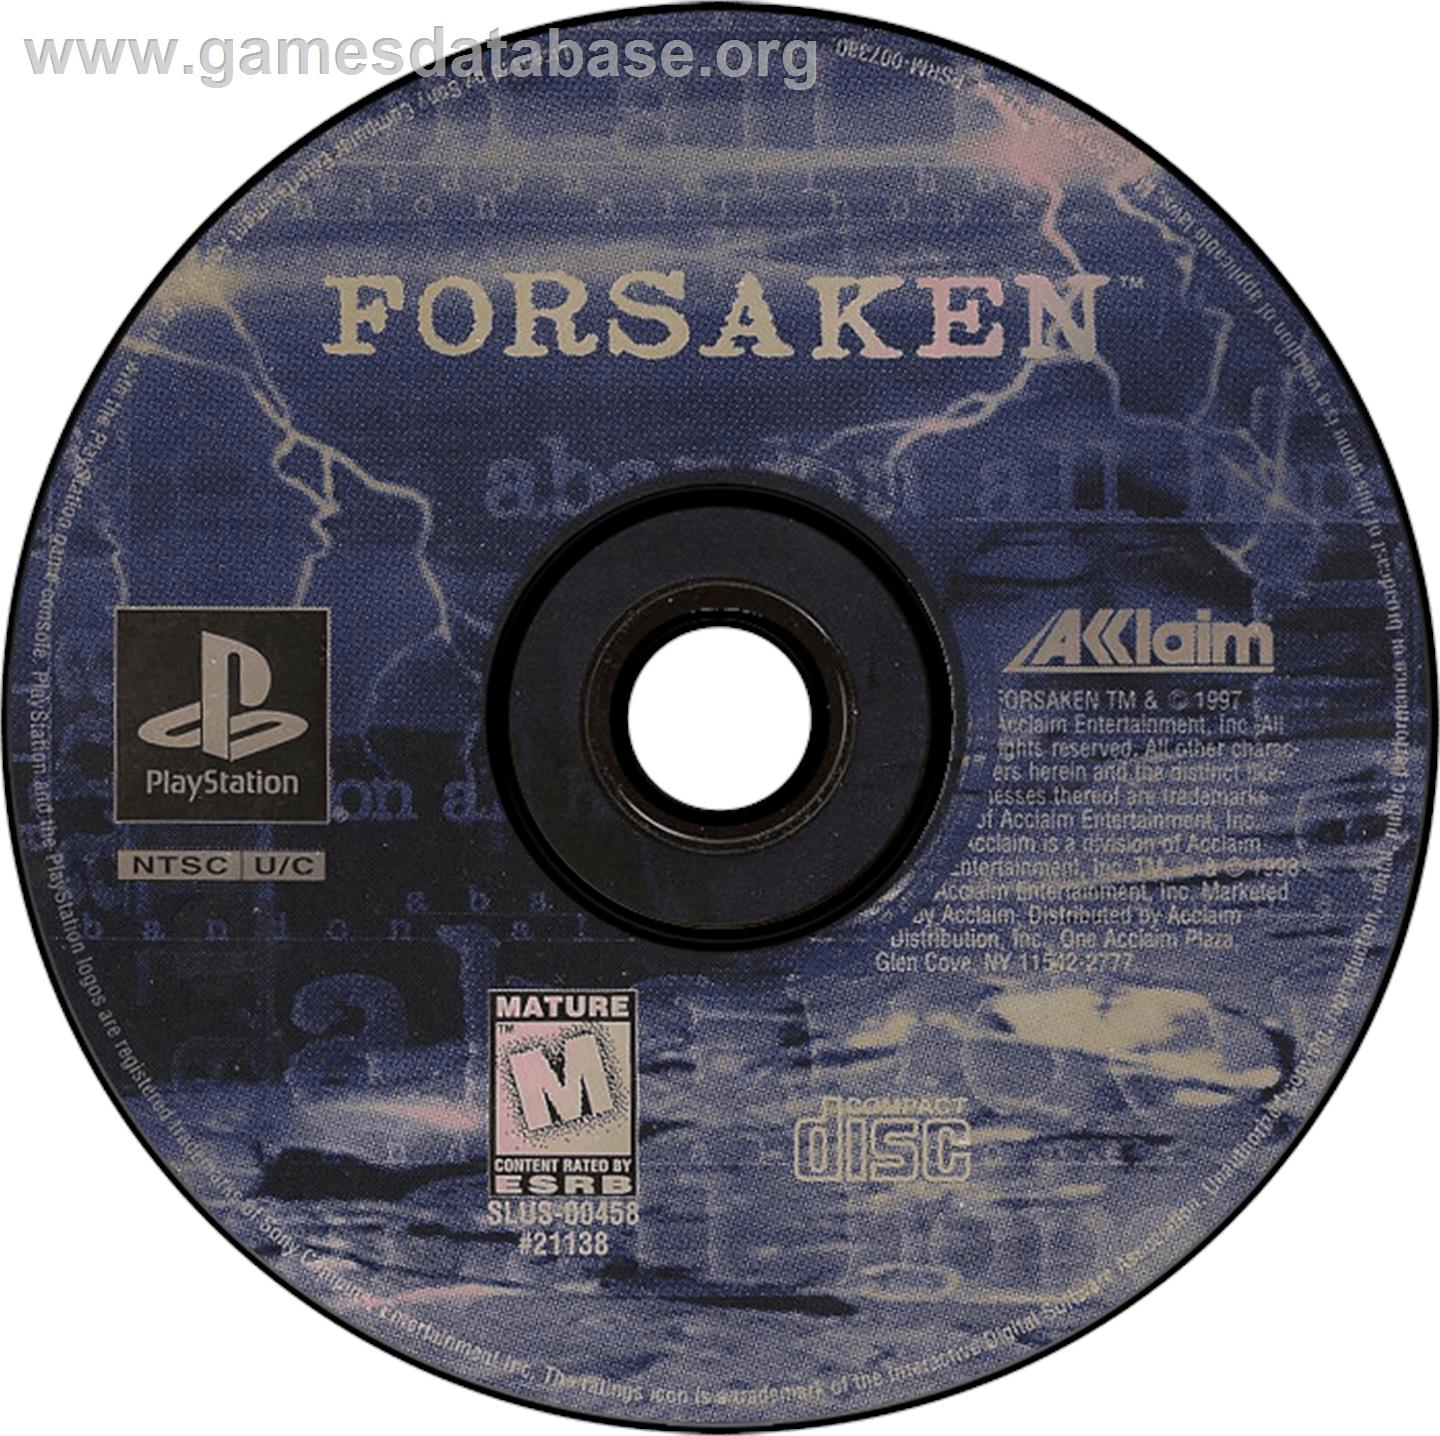 Forsaken - Sony Playstation - Artwork - Disc